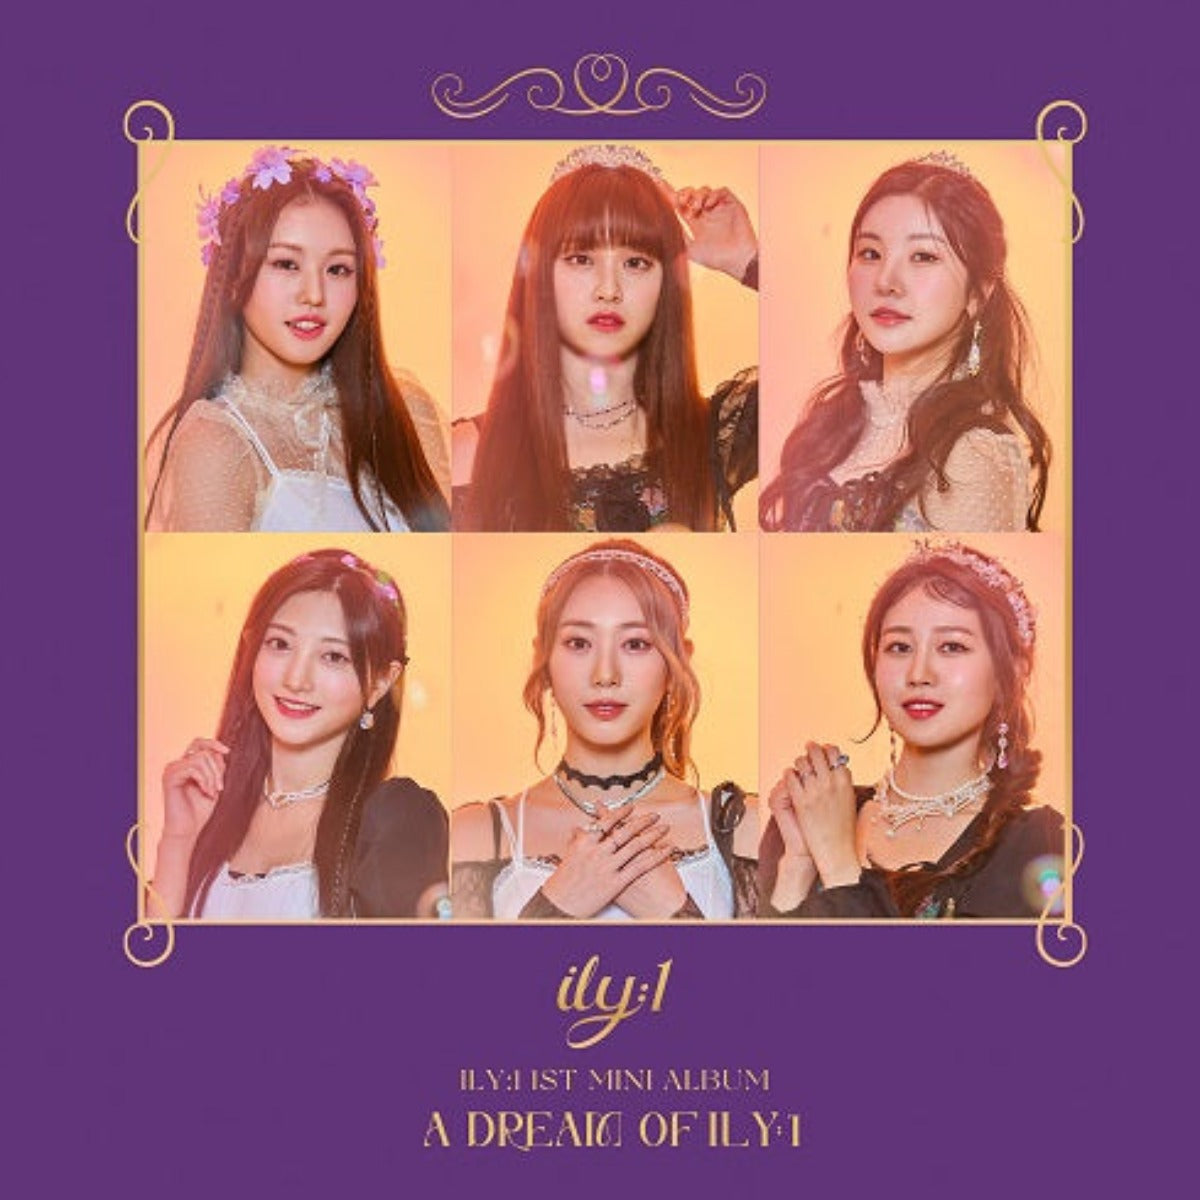 Ily:1 1st Mini Album - A Dream of ILY:1